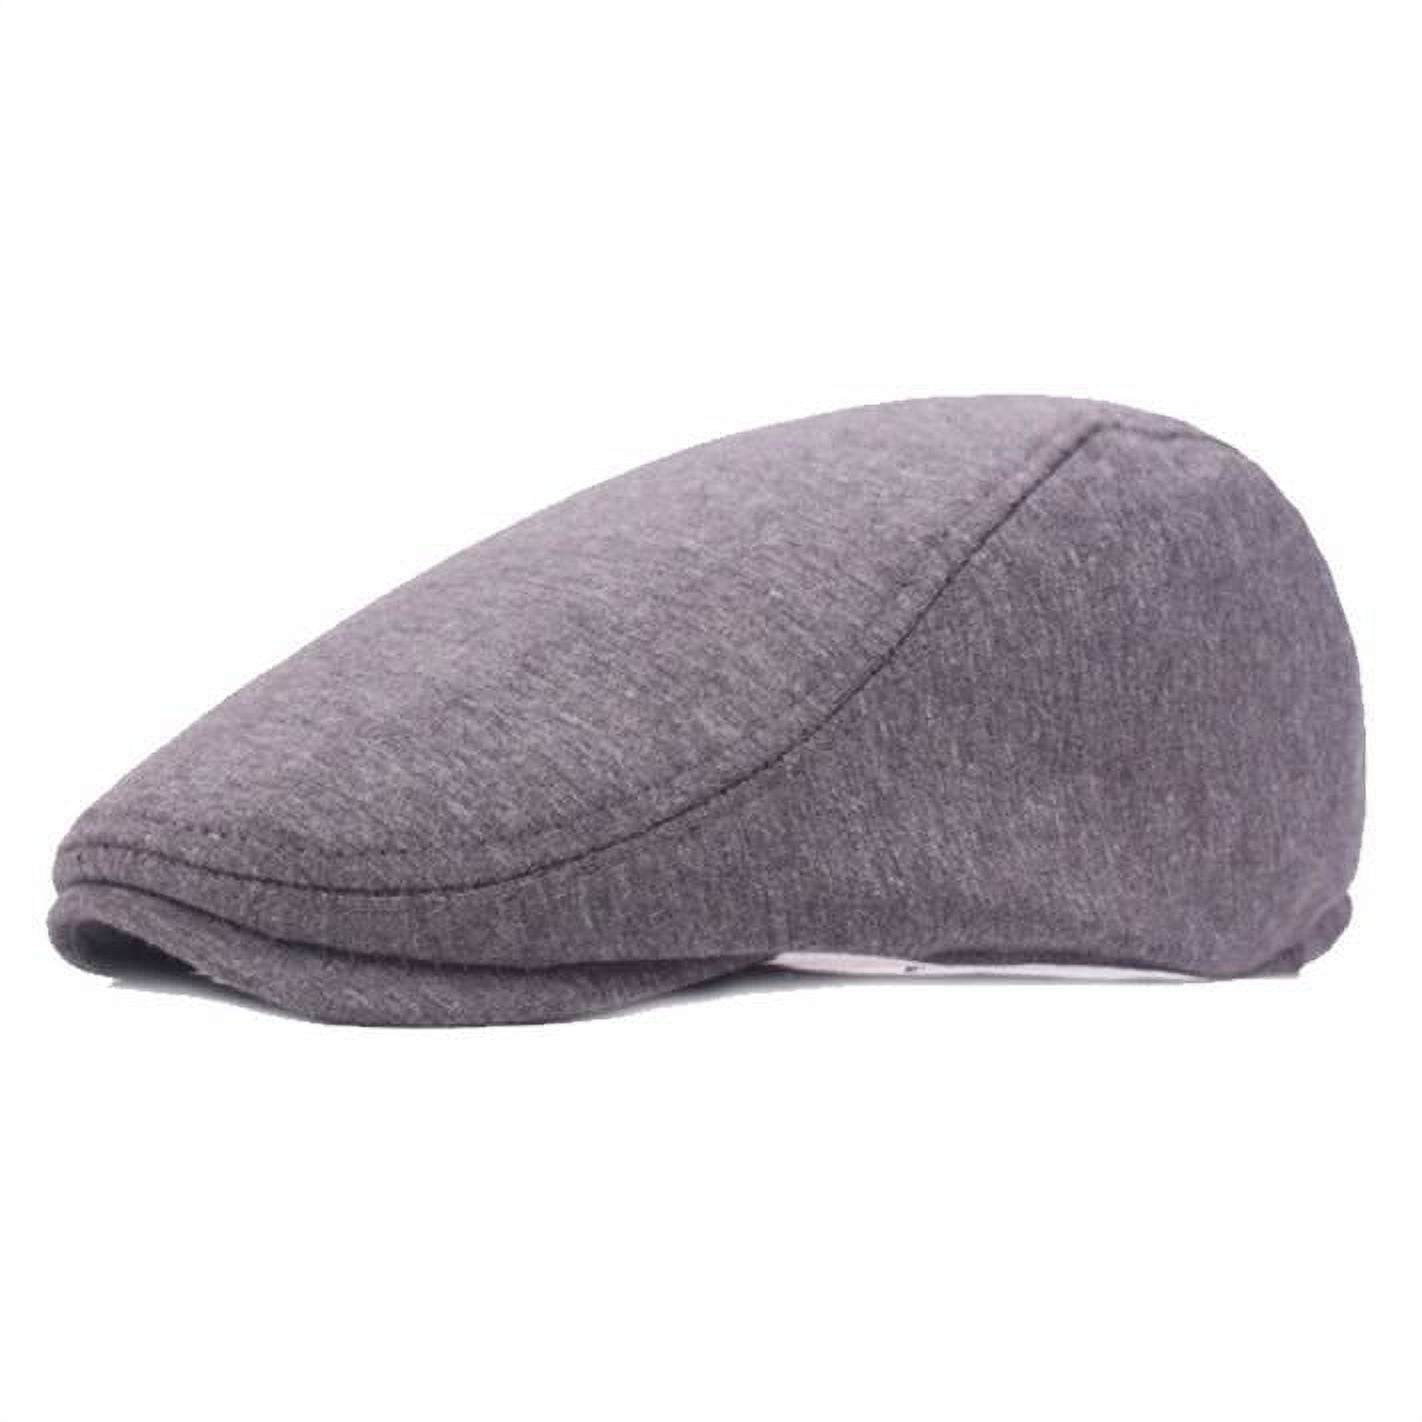 SKYCARPER 1 Pieces Newsboy Men's Hat Cotton Soft Stretch Fit Men Cap Cabbie Driving Hat for Men, Size: One size, Gray